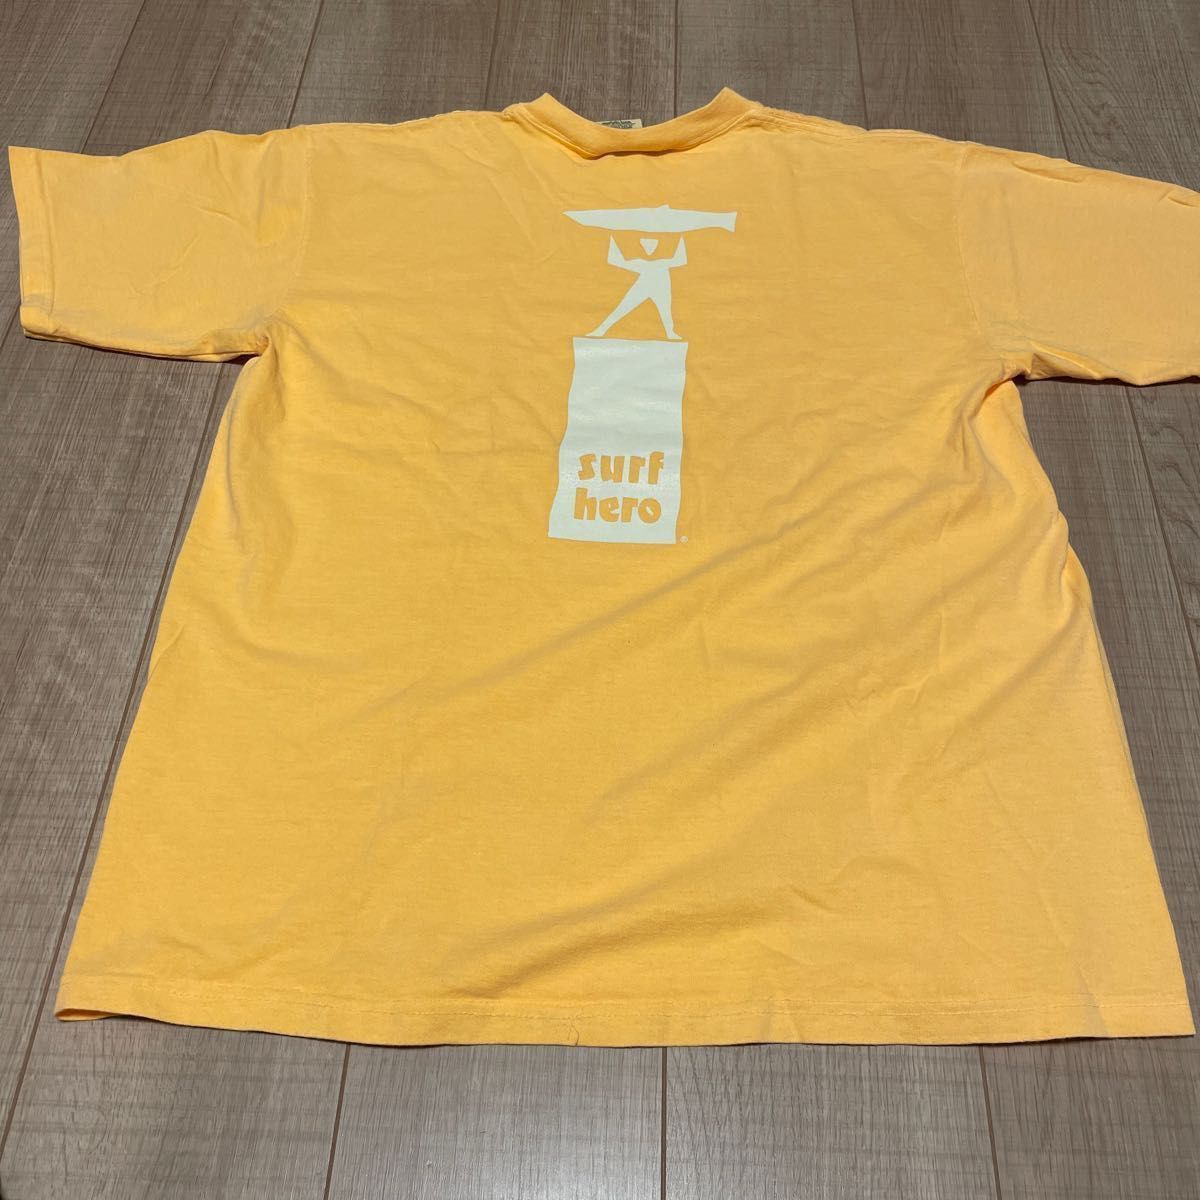 84〜90年代　ONEITA JAMAICA製　オニータ　ジャマイカ製　Tシャツ　L